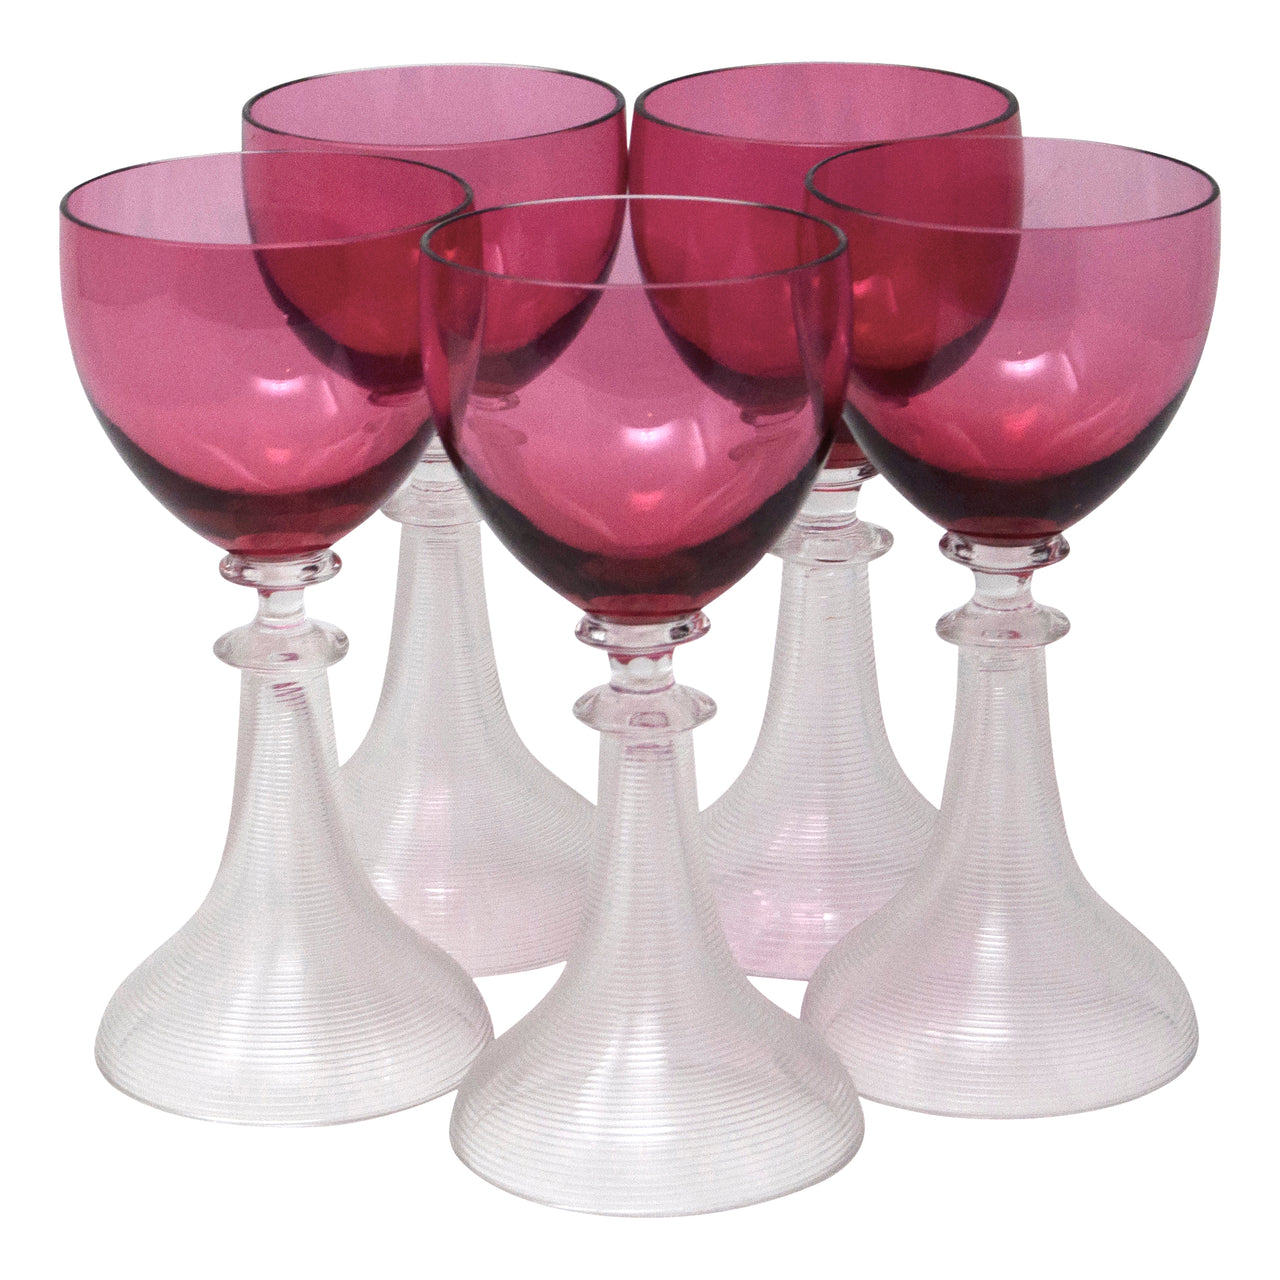 Vintage Color Wine Glasses, Vintage Glass Cup Glasses